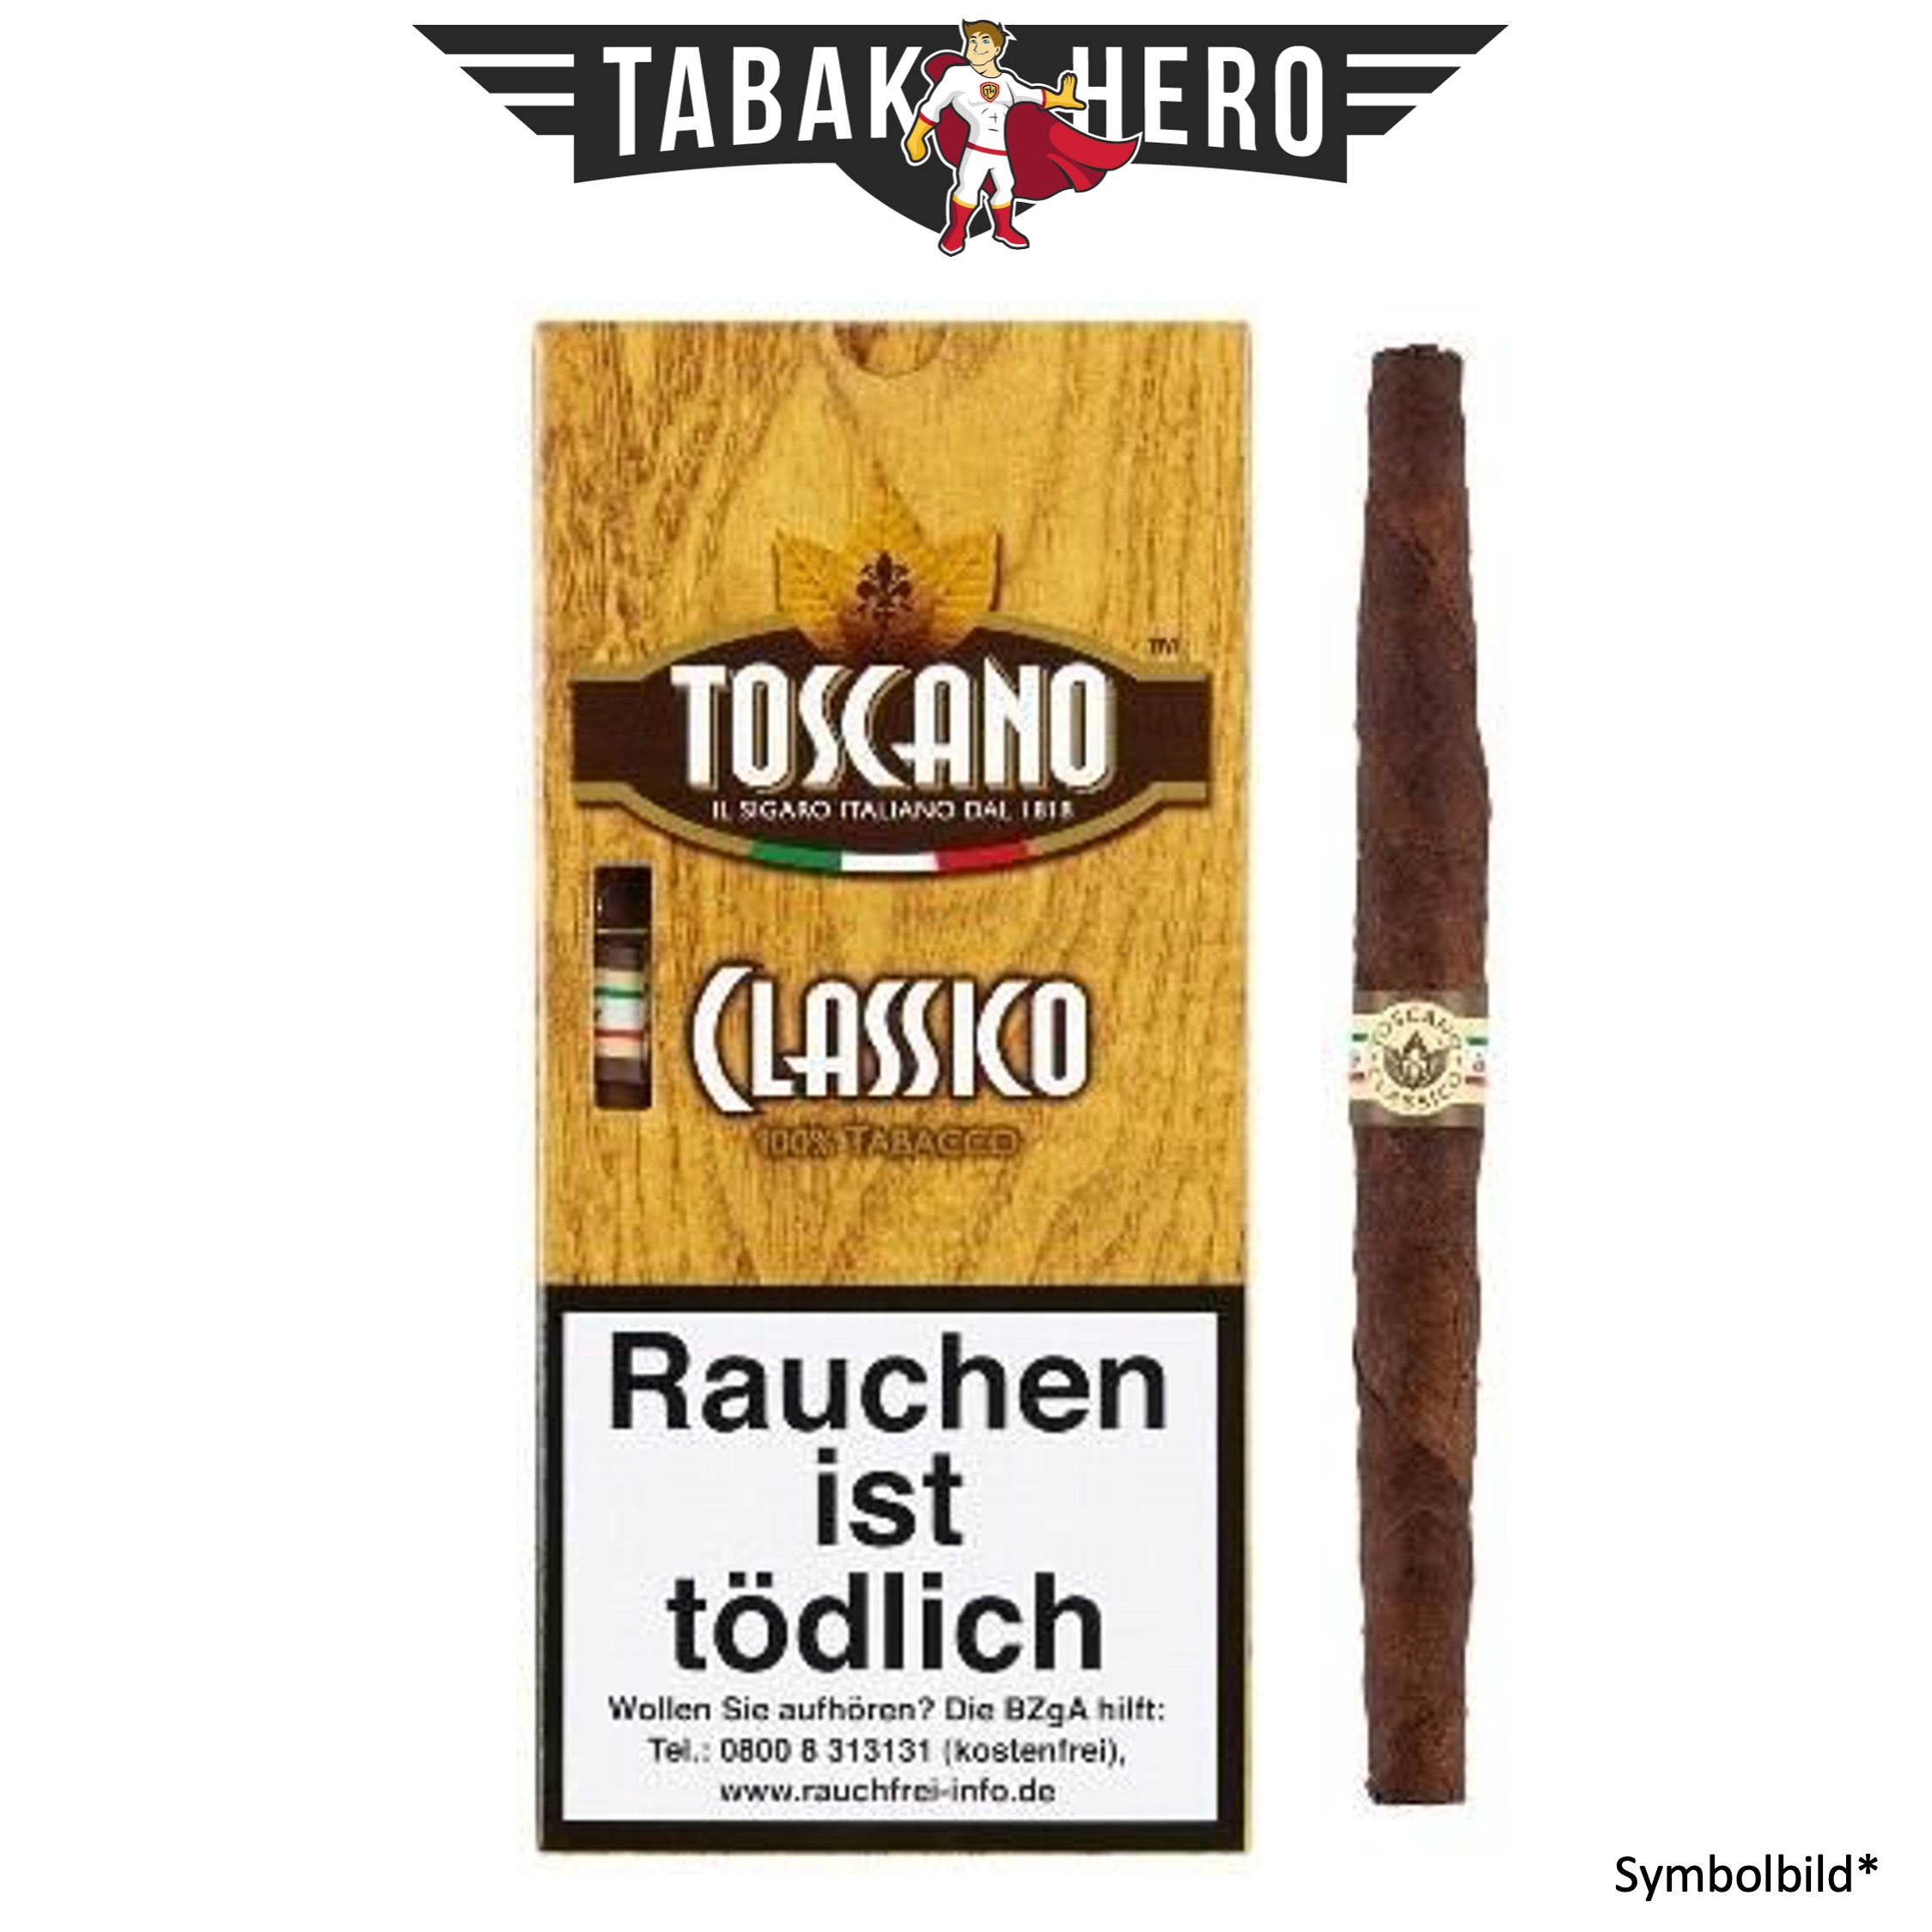 Toscano Classico (5 Zigarren)